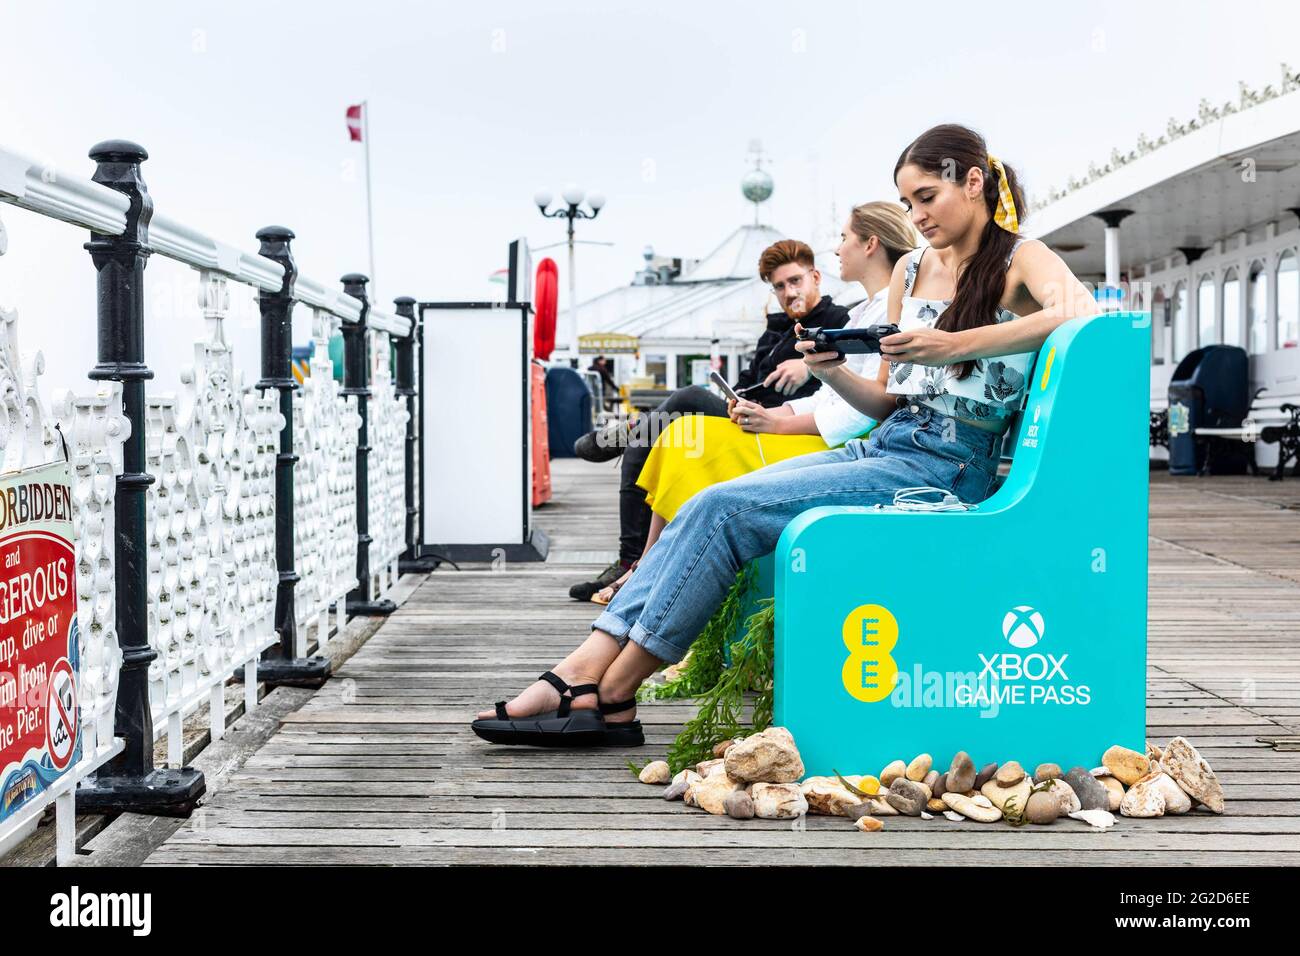 USO EDITORIALE SOLO i giocatori di telefonia mobile godono di EE's Gaming on the Go Pit ferma Brighton Pier, East Sussex. Data immagine: Giovedì 10 giugno 2021. Foto Stock